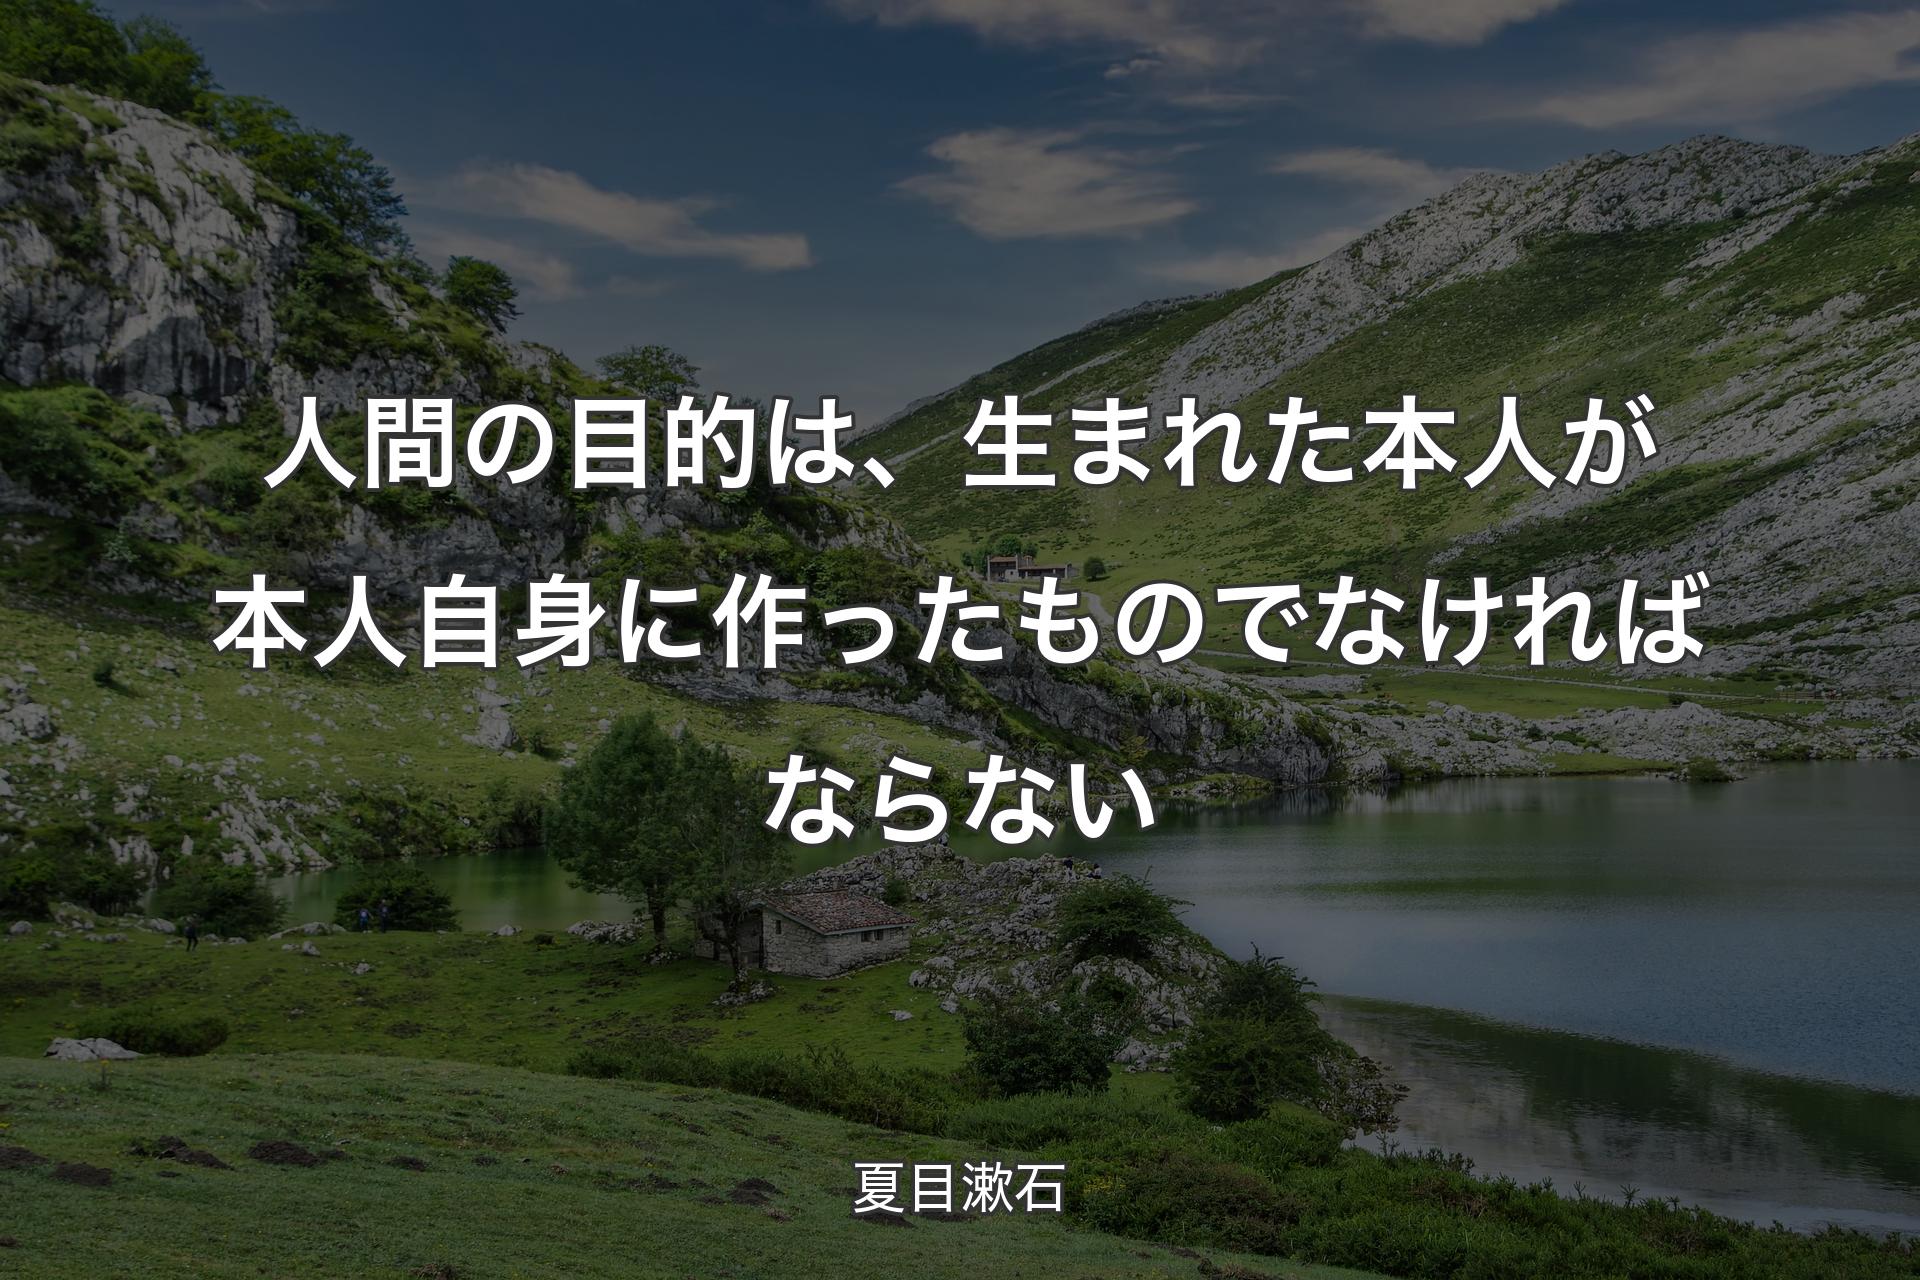 人間の目的は、生まれた本人が本人自身に作ったものでなければならない - 夏目漱石